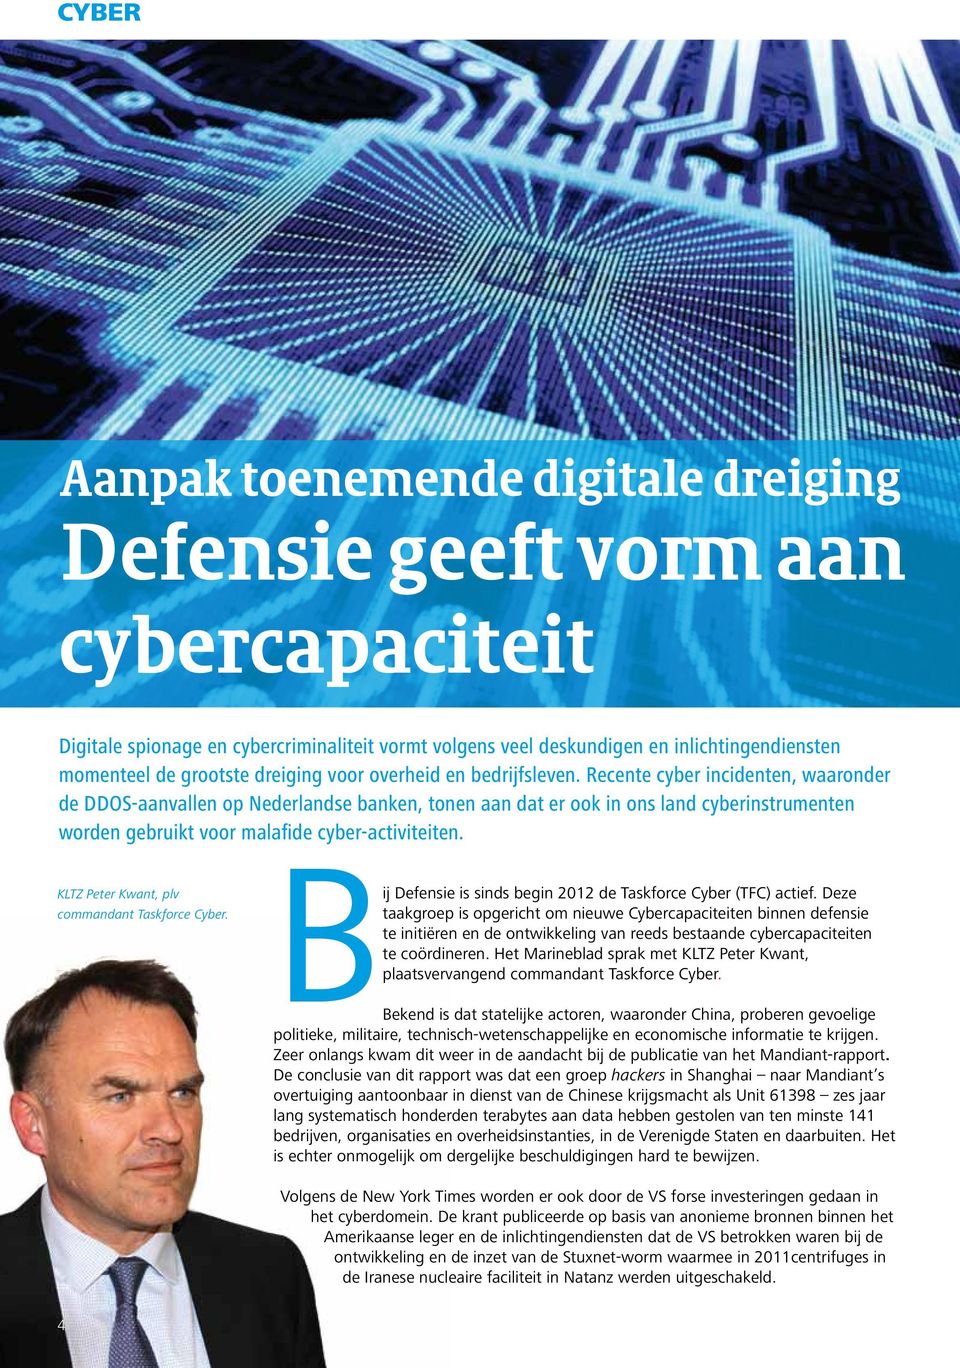 Recente cyber incidenten, waaronder de DDOS-aanvallen op Nederlandse banken, tonen aan dat er ook in ons land cyberinstrumenten worden gebruikt voor malafide cyber-activiteiten.